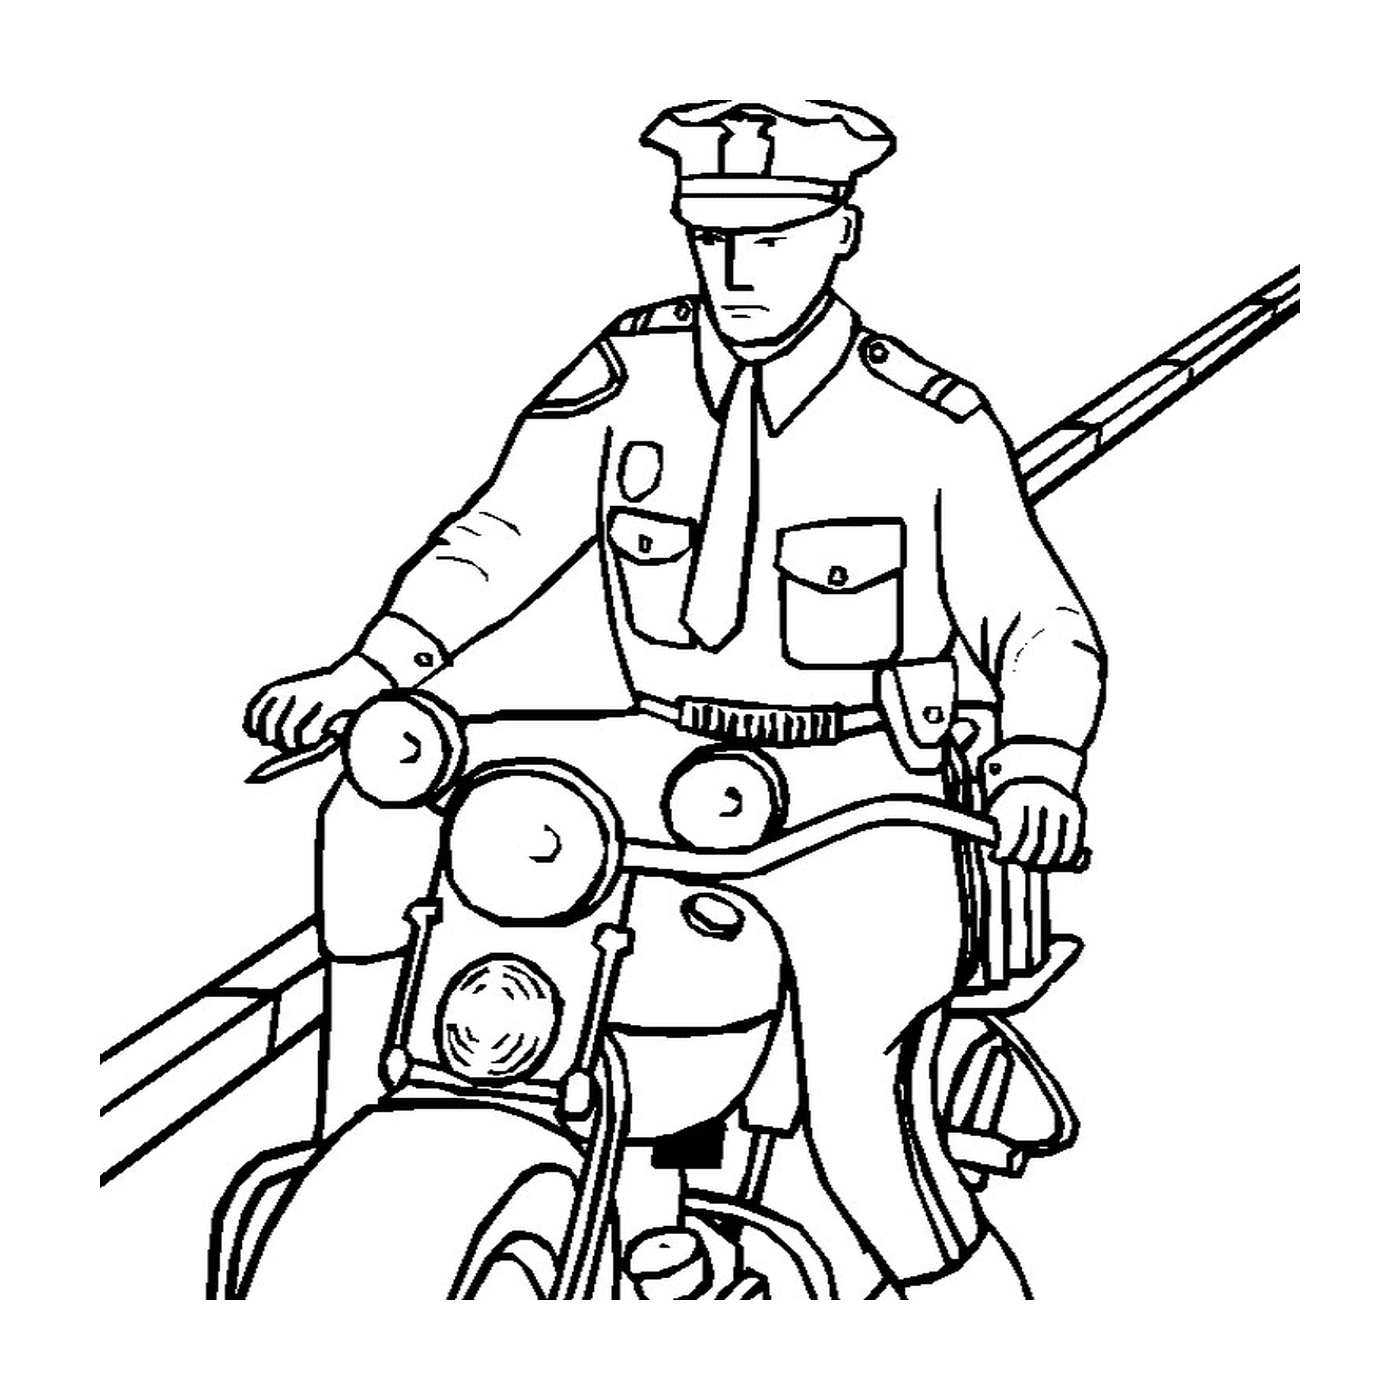  Schnelle Polizei Motorrad 